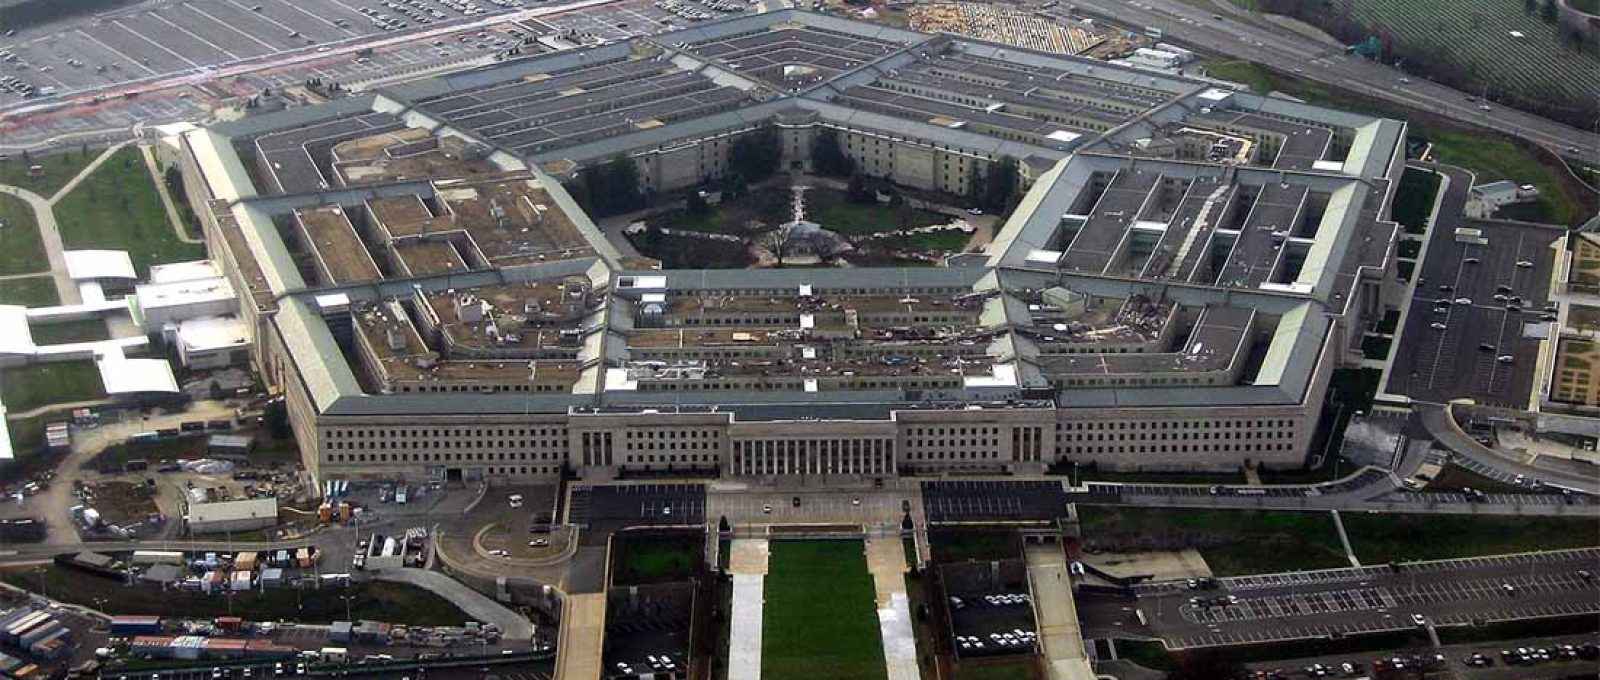 O Pentágono, sede do Departamento de Defesa dos EUA, em foto aérea de janeiro de 2008 (David B. Gleason/Wikimedia Commons/ CC BY-SA 2.0).